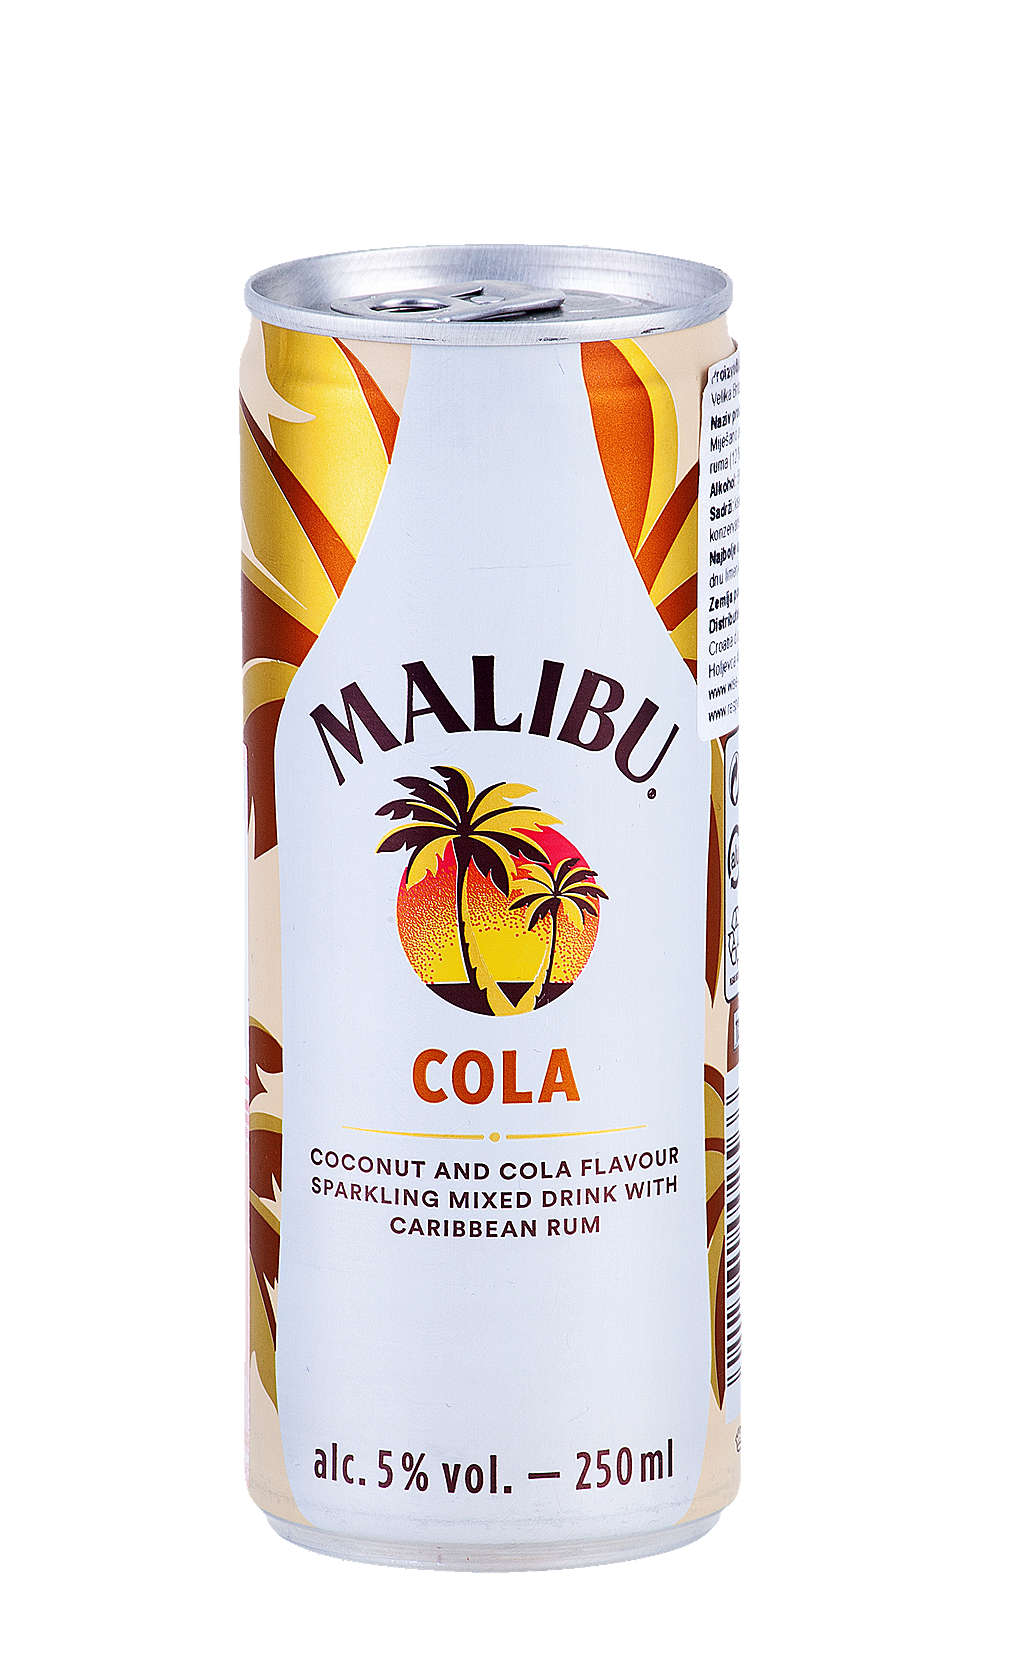 Fotografija ponude Malibu Rum cola mix